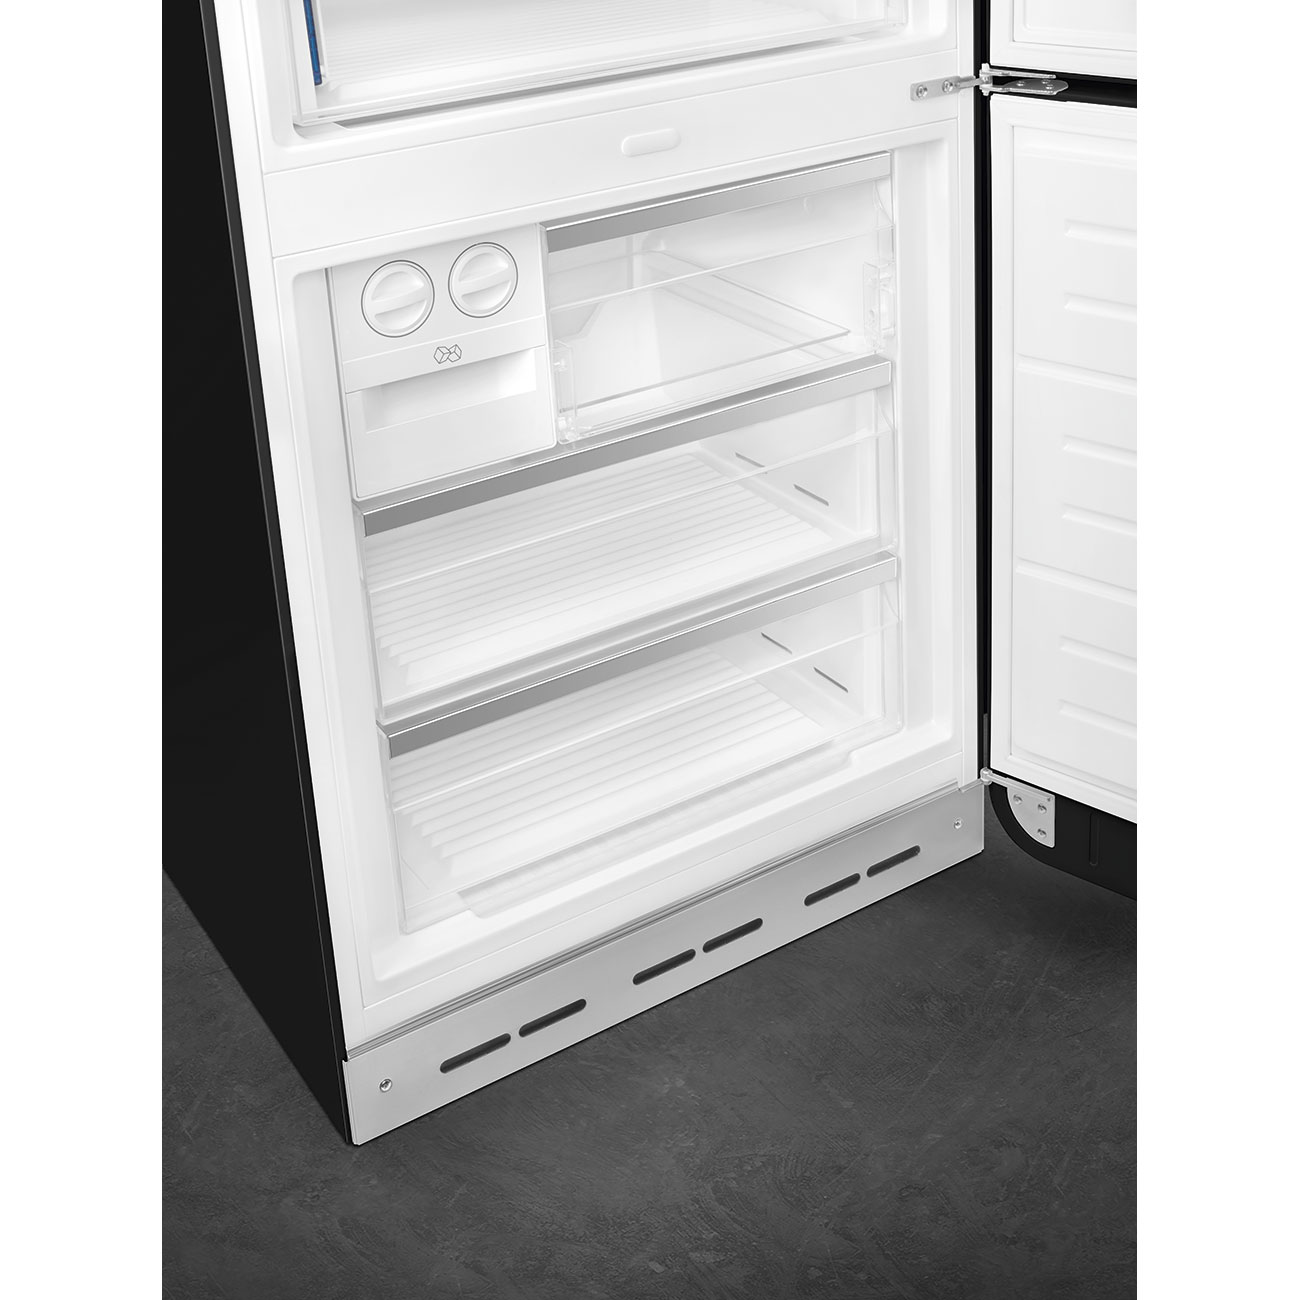 Black refrigerator - Smeg_9